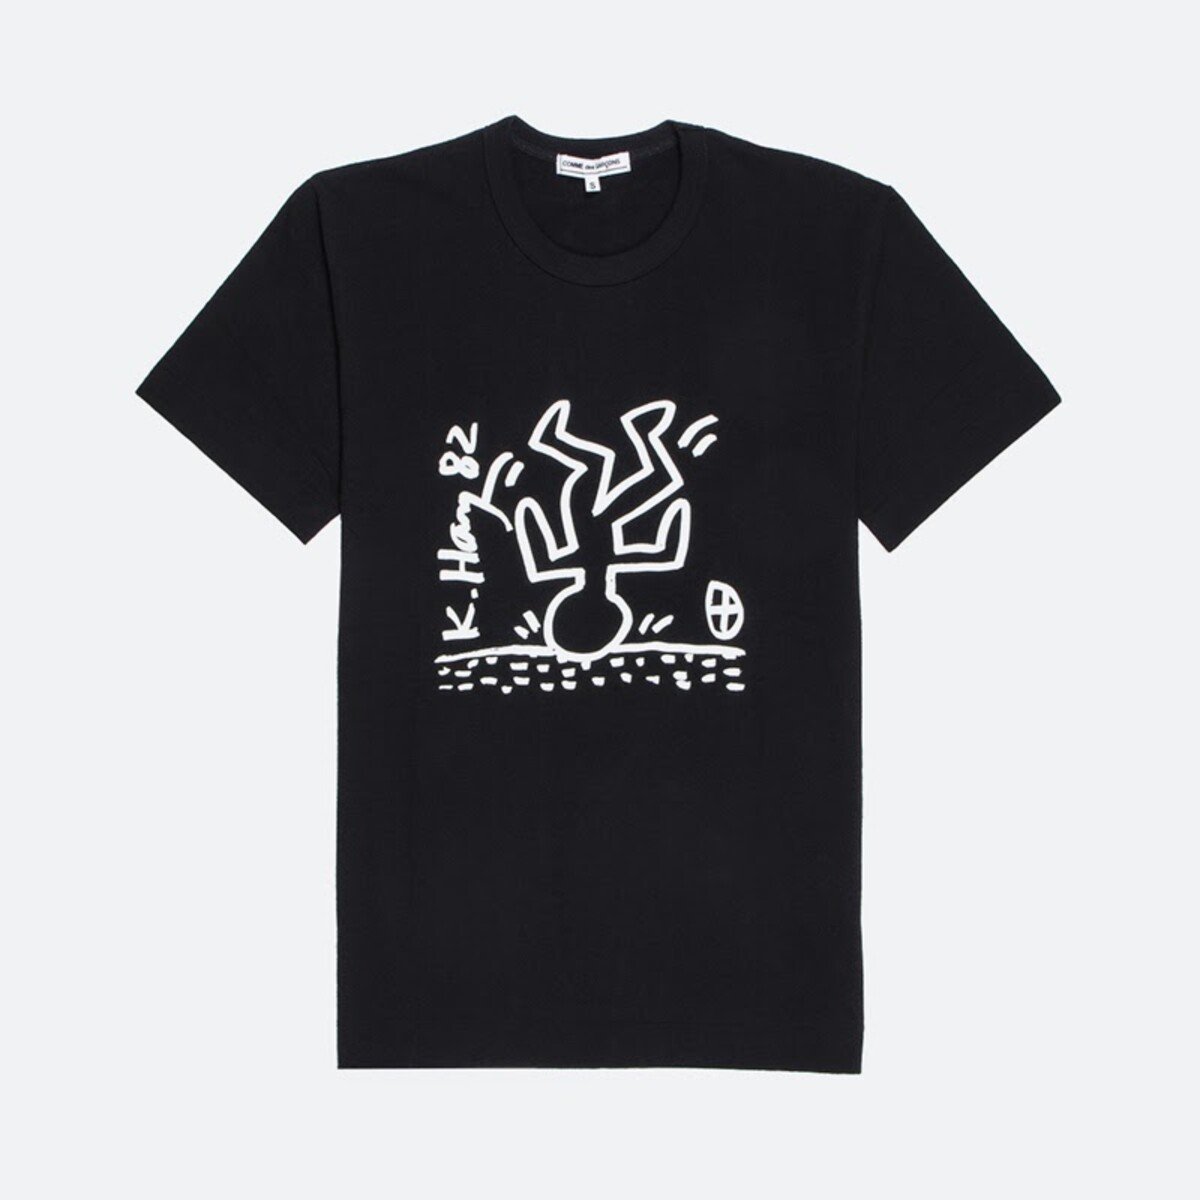 V roku 2011 vznikla kapsulová kolekcie Comme des Garçons x Keith Haring, v ktorej vzdala japonská značka úctu americkému umelcovi.